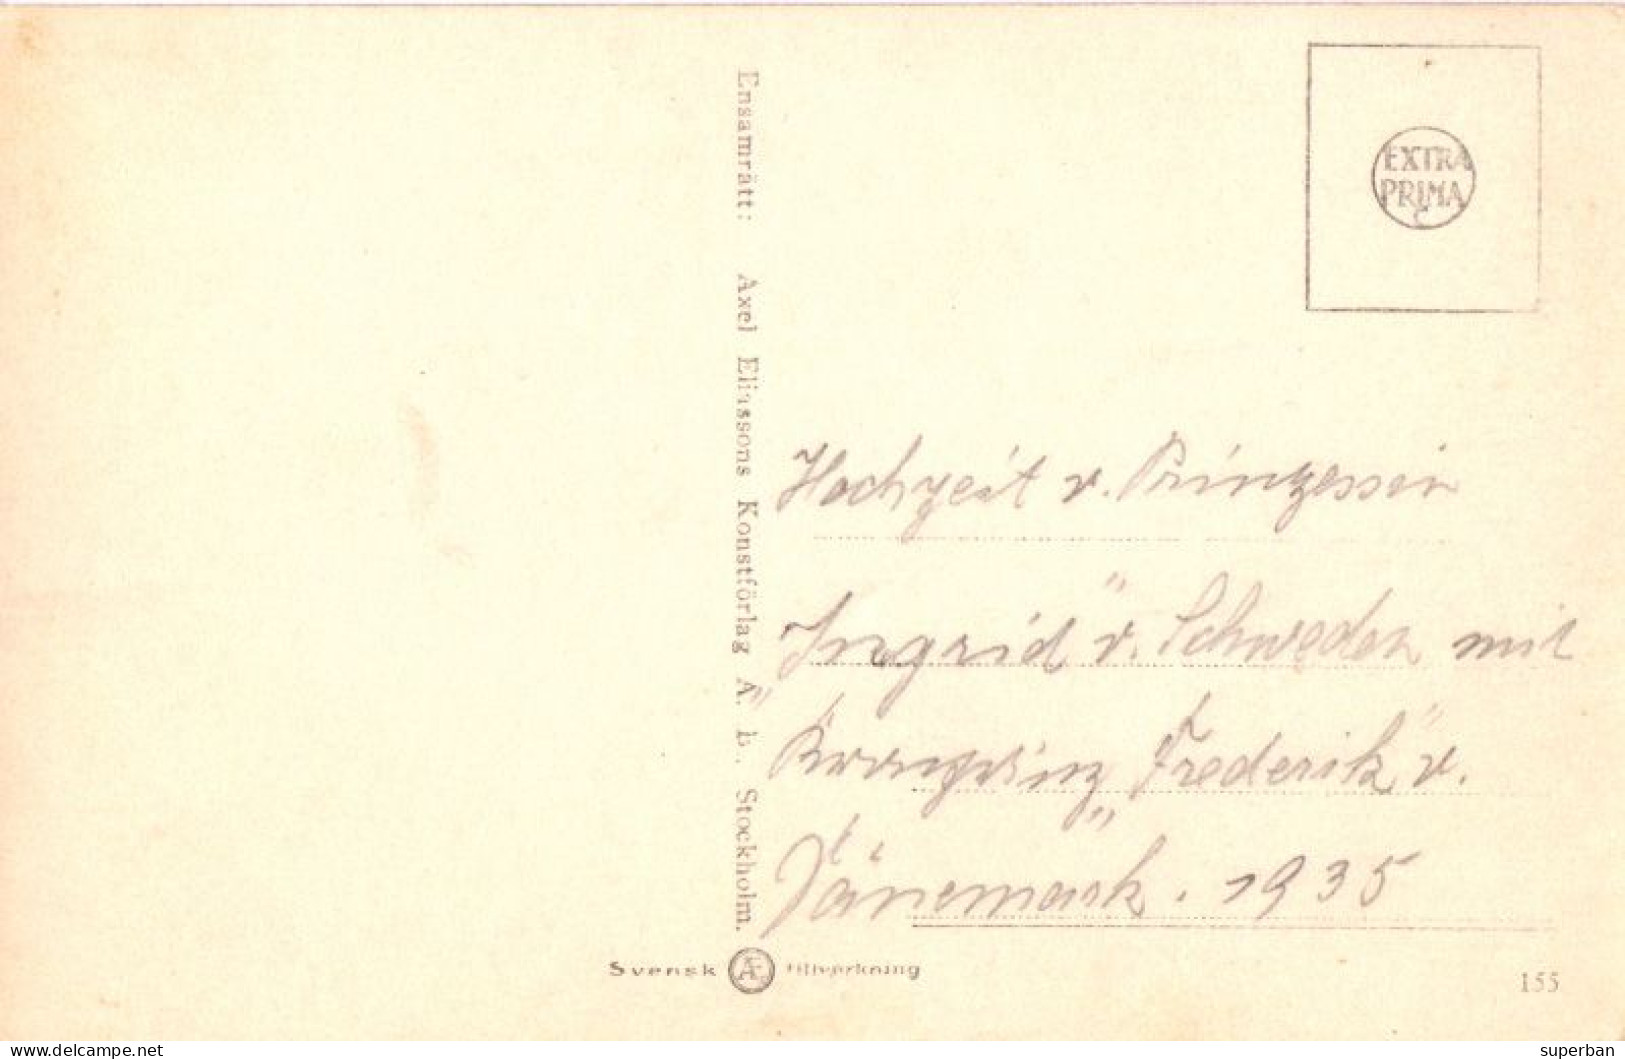 HOCHZEIT V. PRINZESSIN INGRID V. SCHWEDEN MIT KRONPRINZ FREDERIK V. DANEMARK - 24 MAI 1935 (am342) - Case Reali